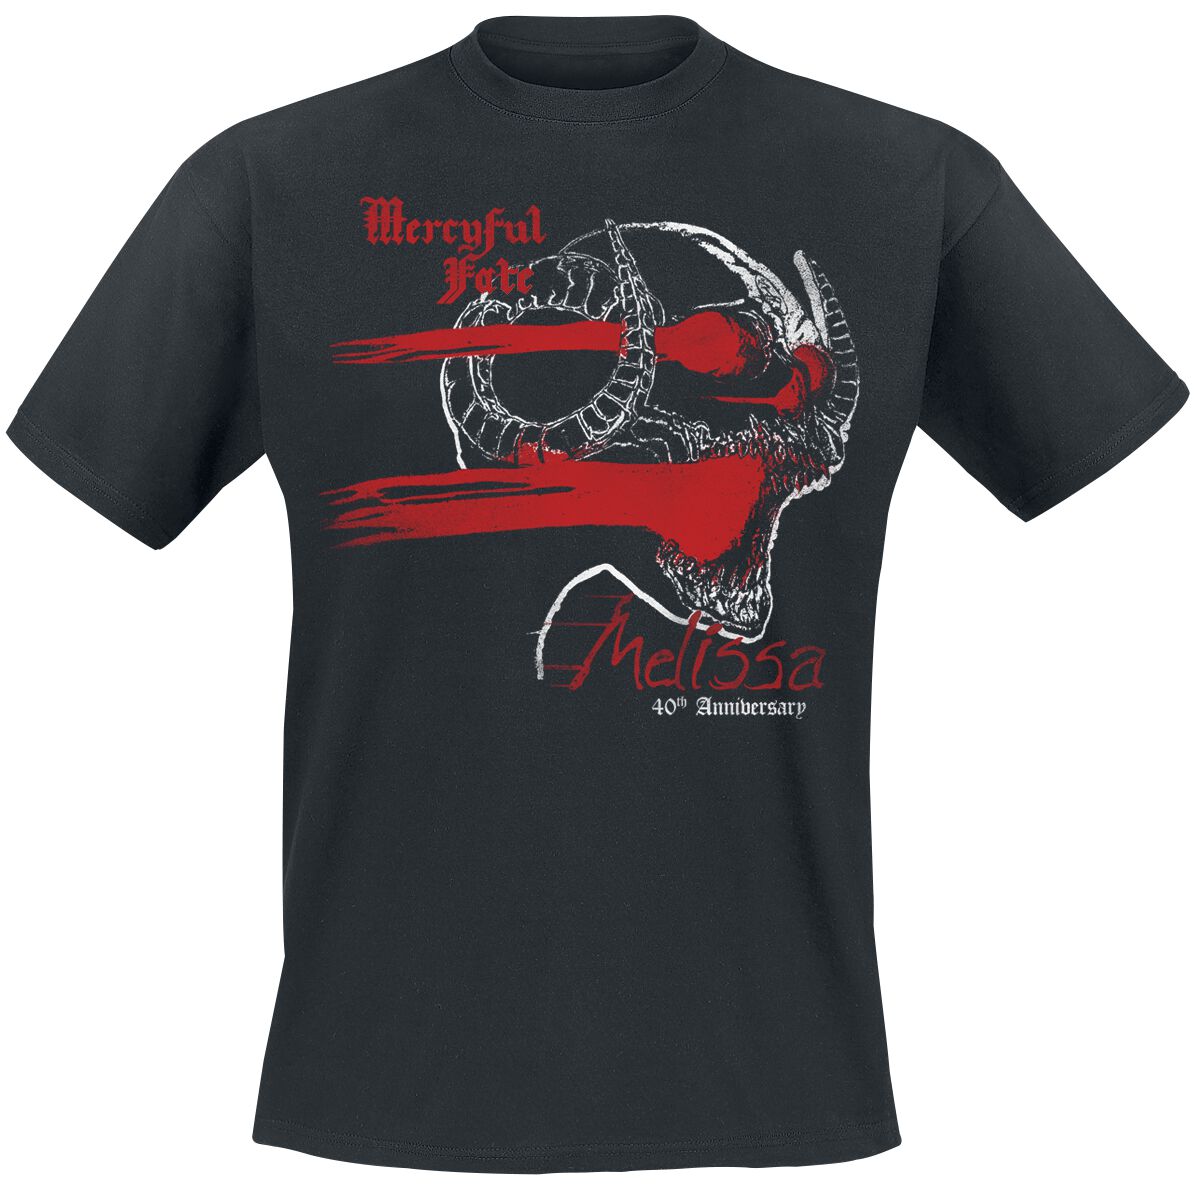 Mercyful Fate T-Shirt - Melissa 40th Anniversary Cross - M bis 3XL - für Männer - Größe L - schwarz  - Lizenziertes Merchandise!